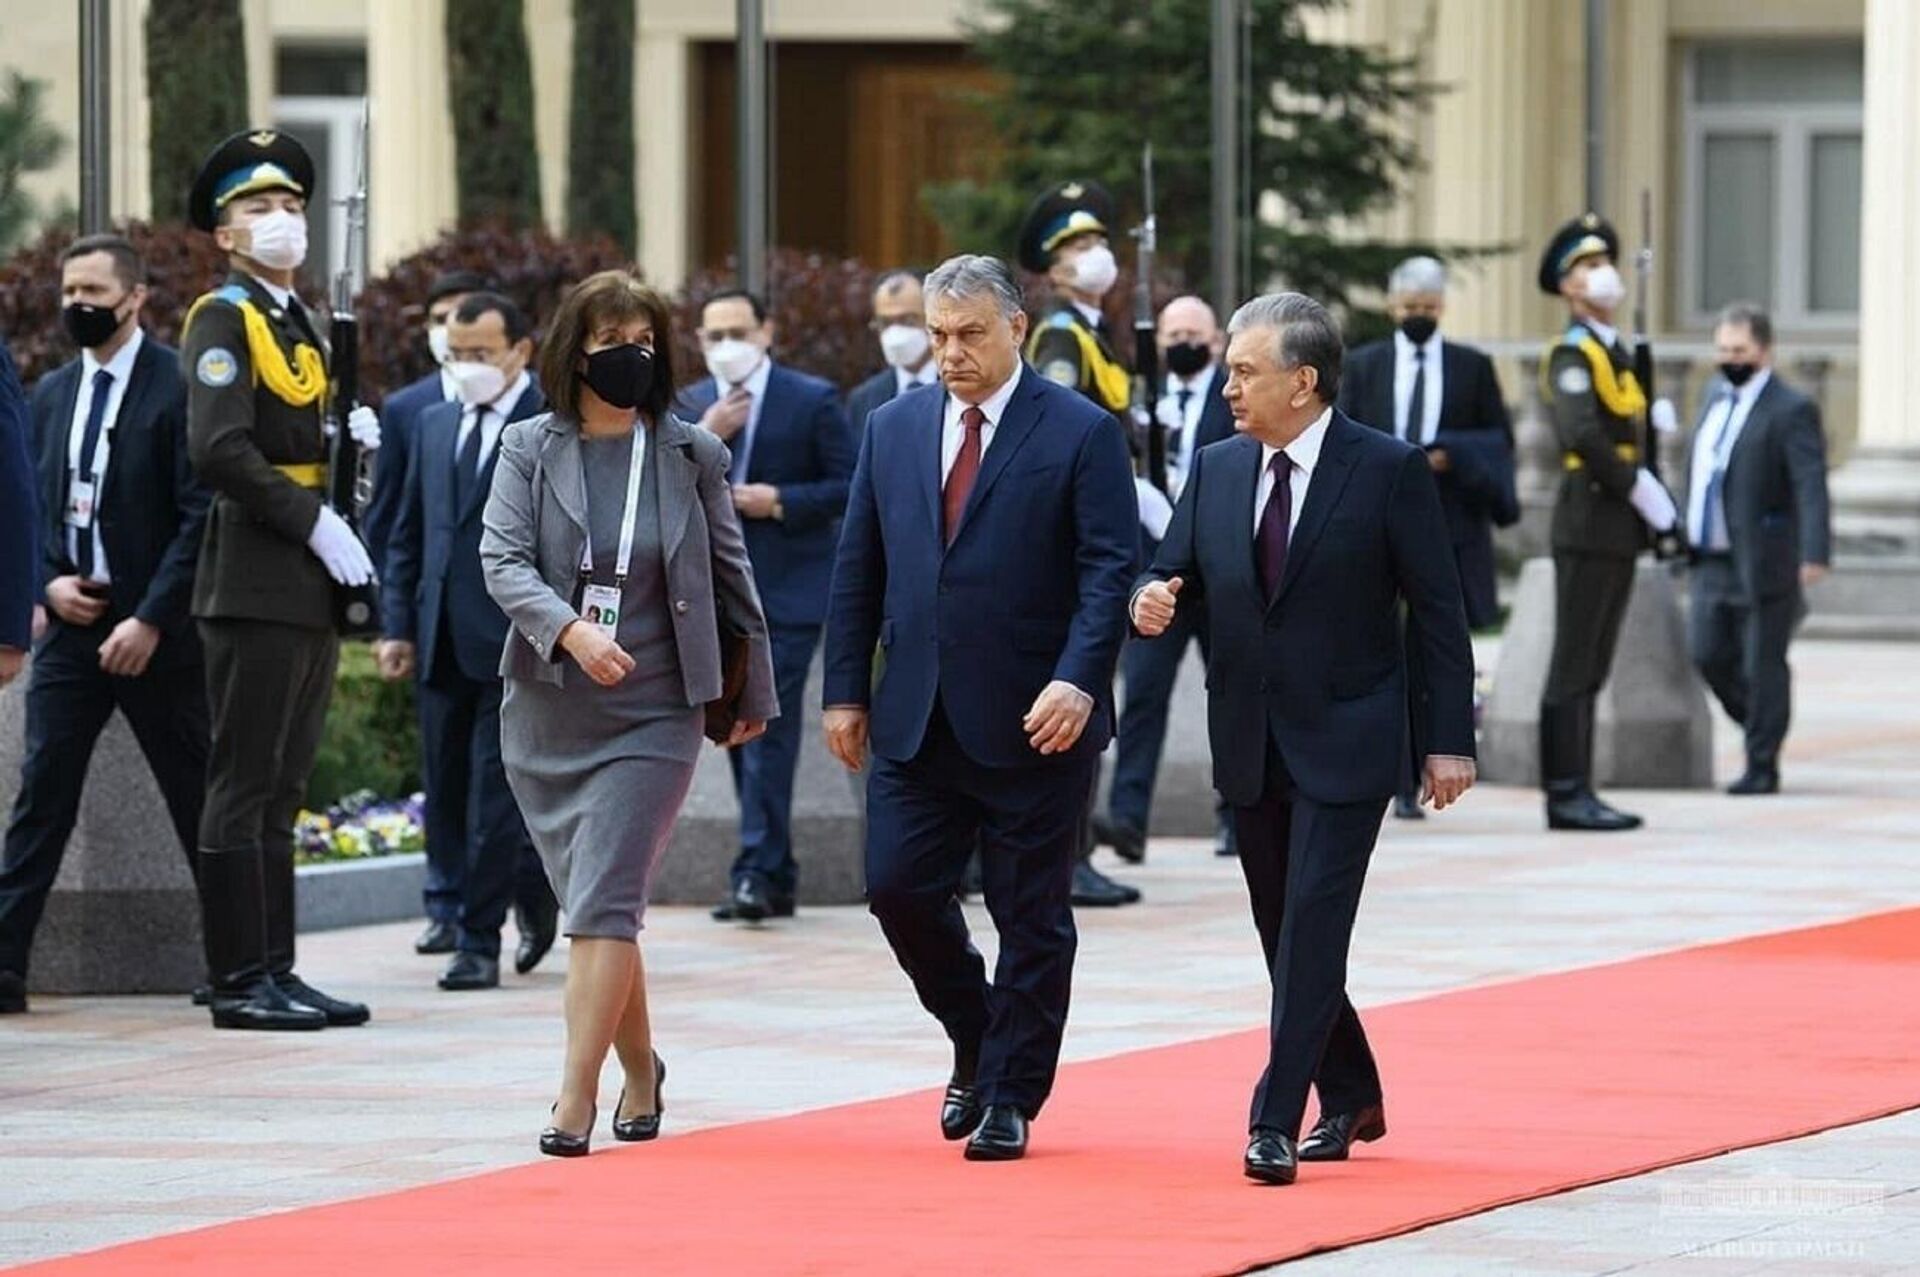 В резиденции Куксарой состоялась церемония встречи премьер-министра Виктора Орбана. - Sputnik Ўзбекистон, 1920, 30.03.2021